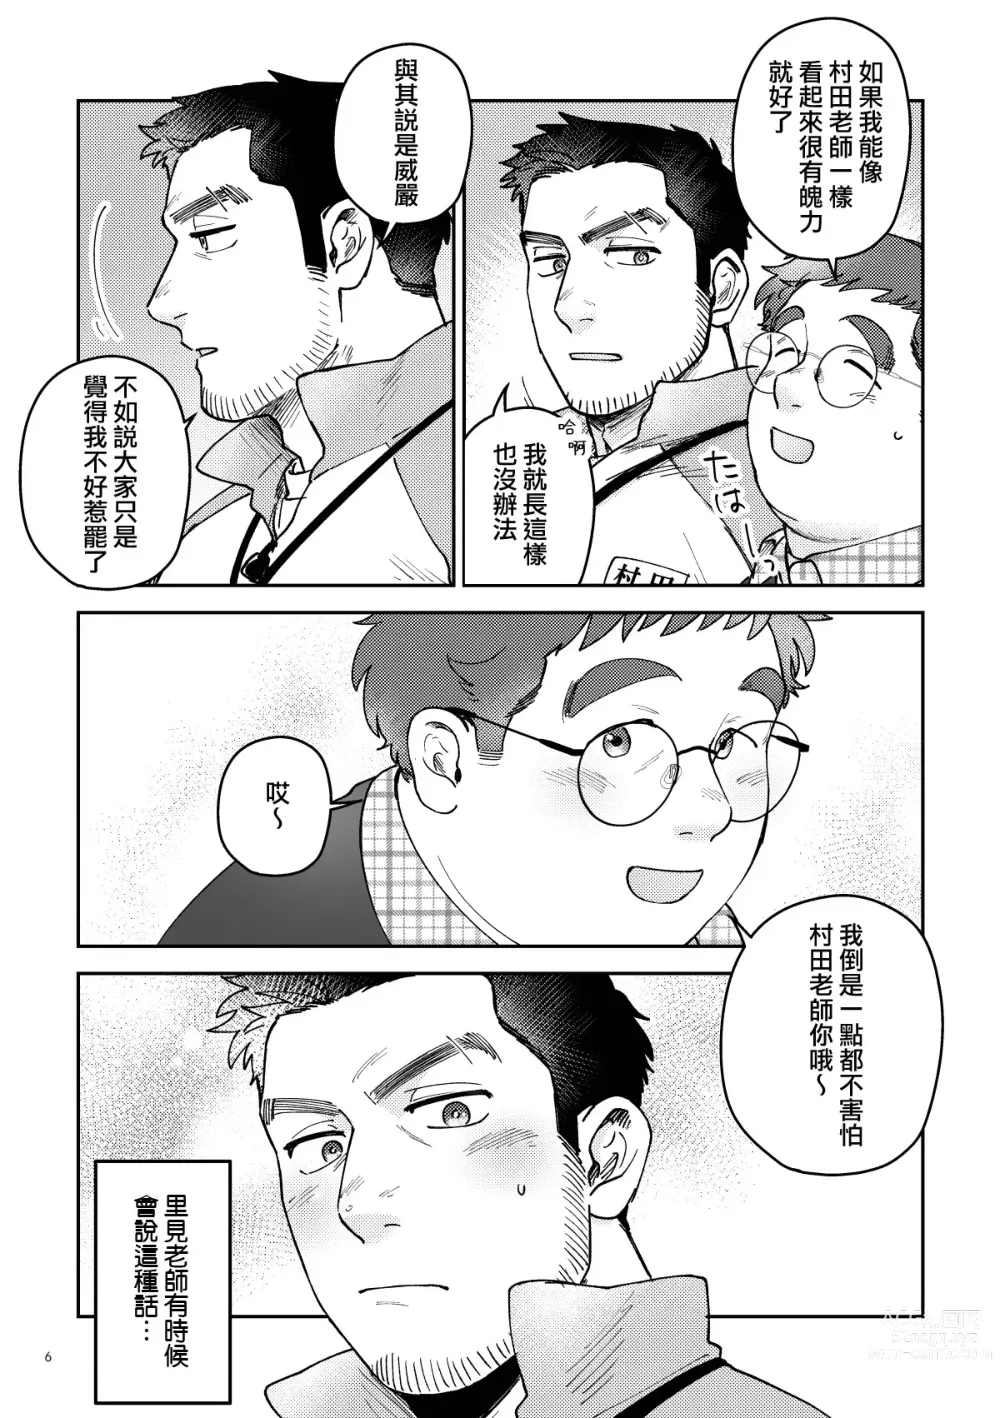 Page 6 of manga はいよろこんでのれイメージギャップハートビート